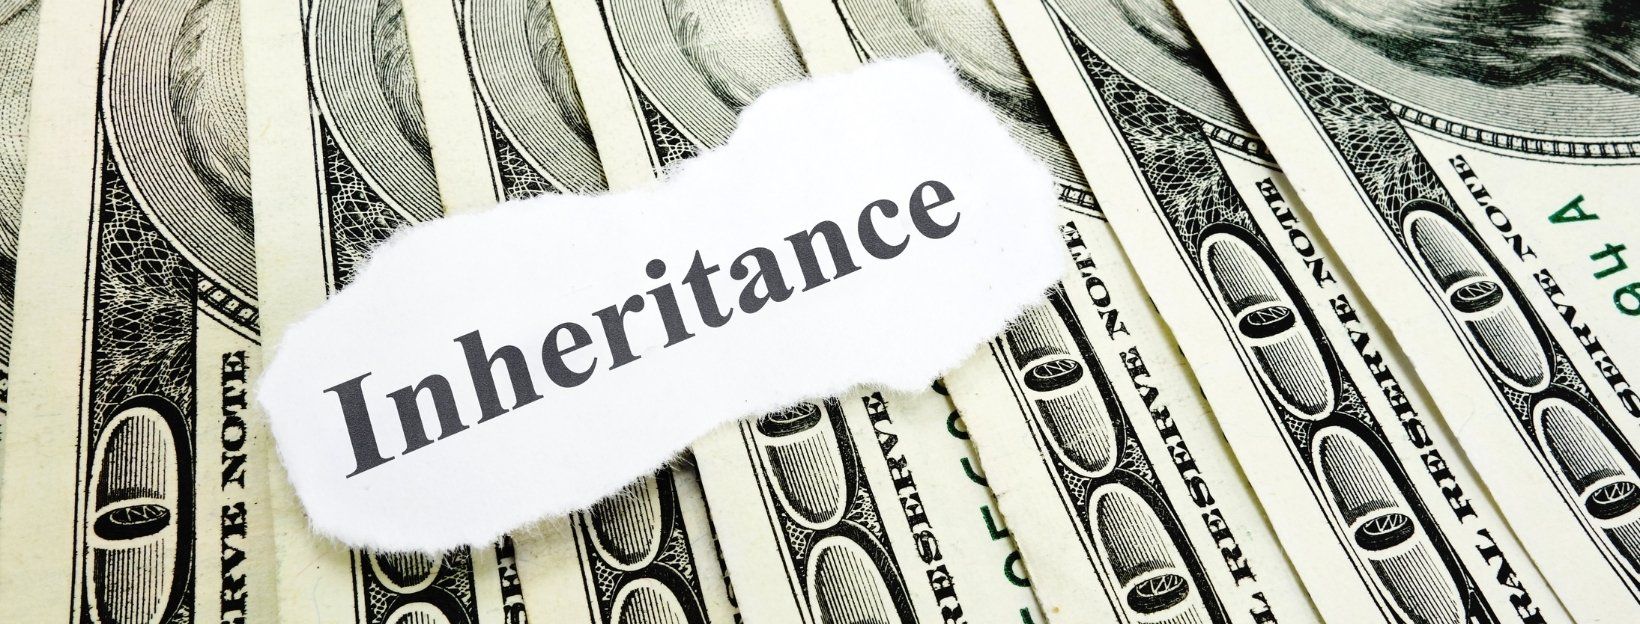 Inheritance Mistakes to Avoid